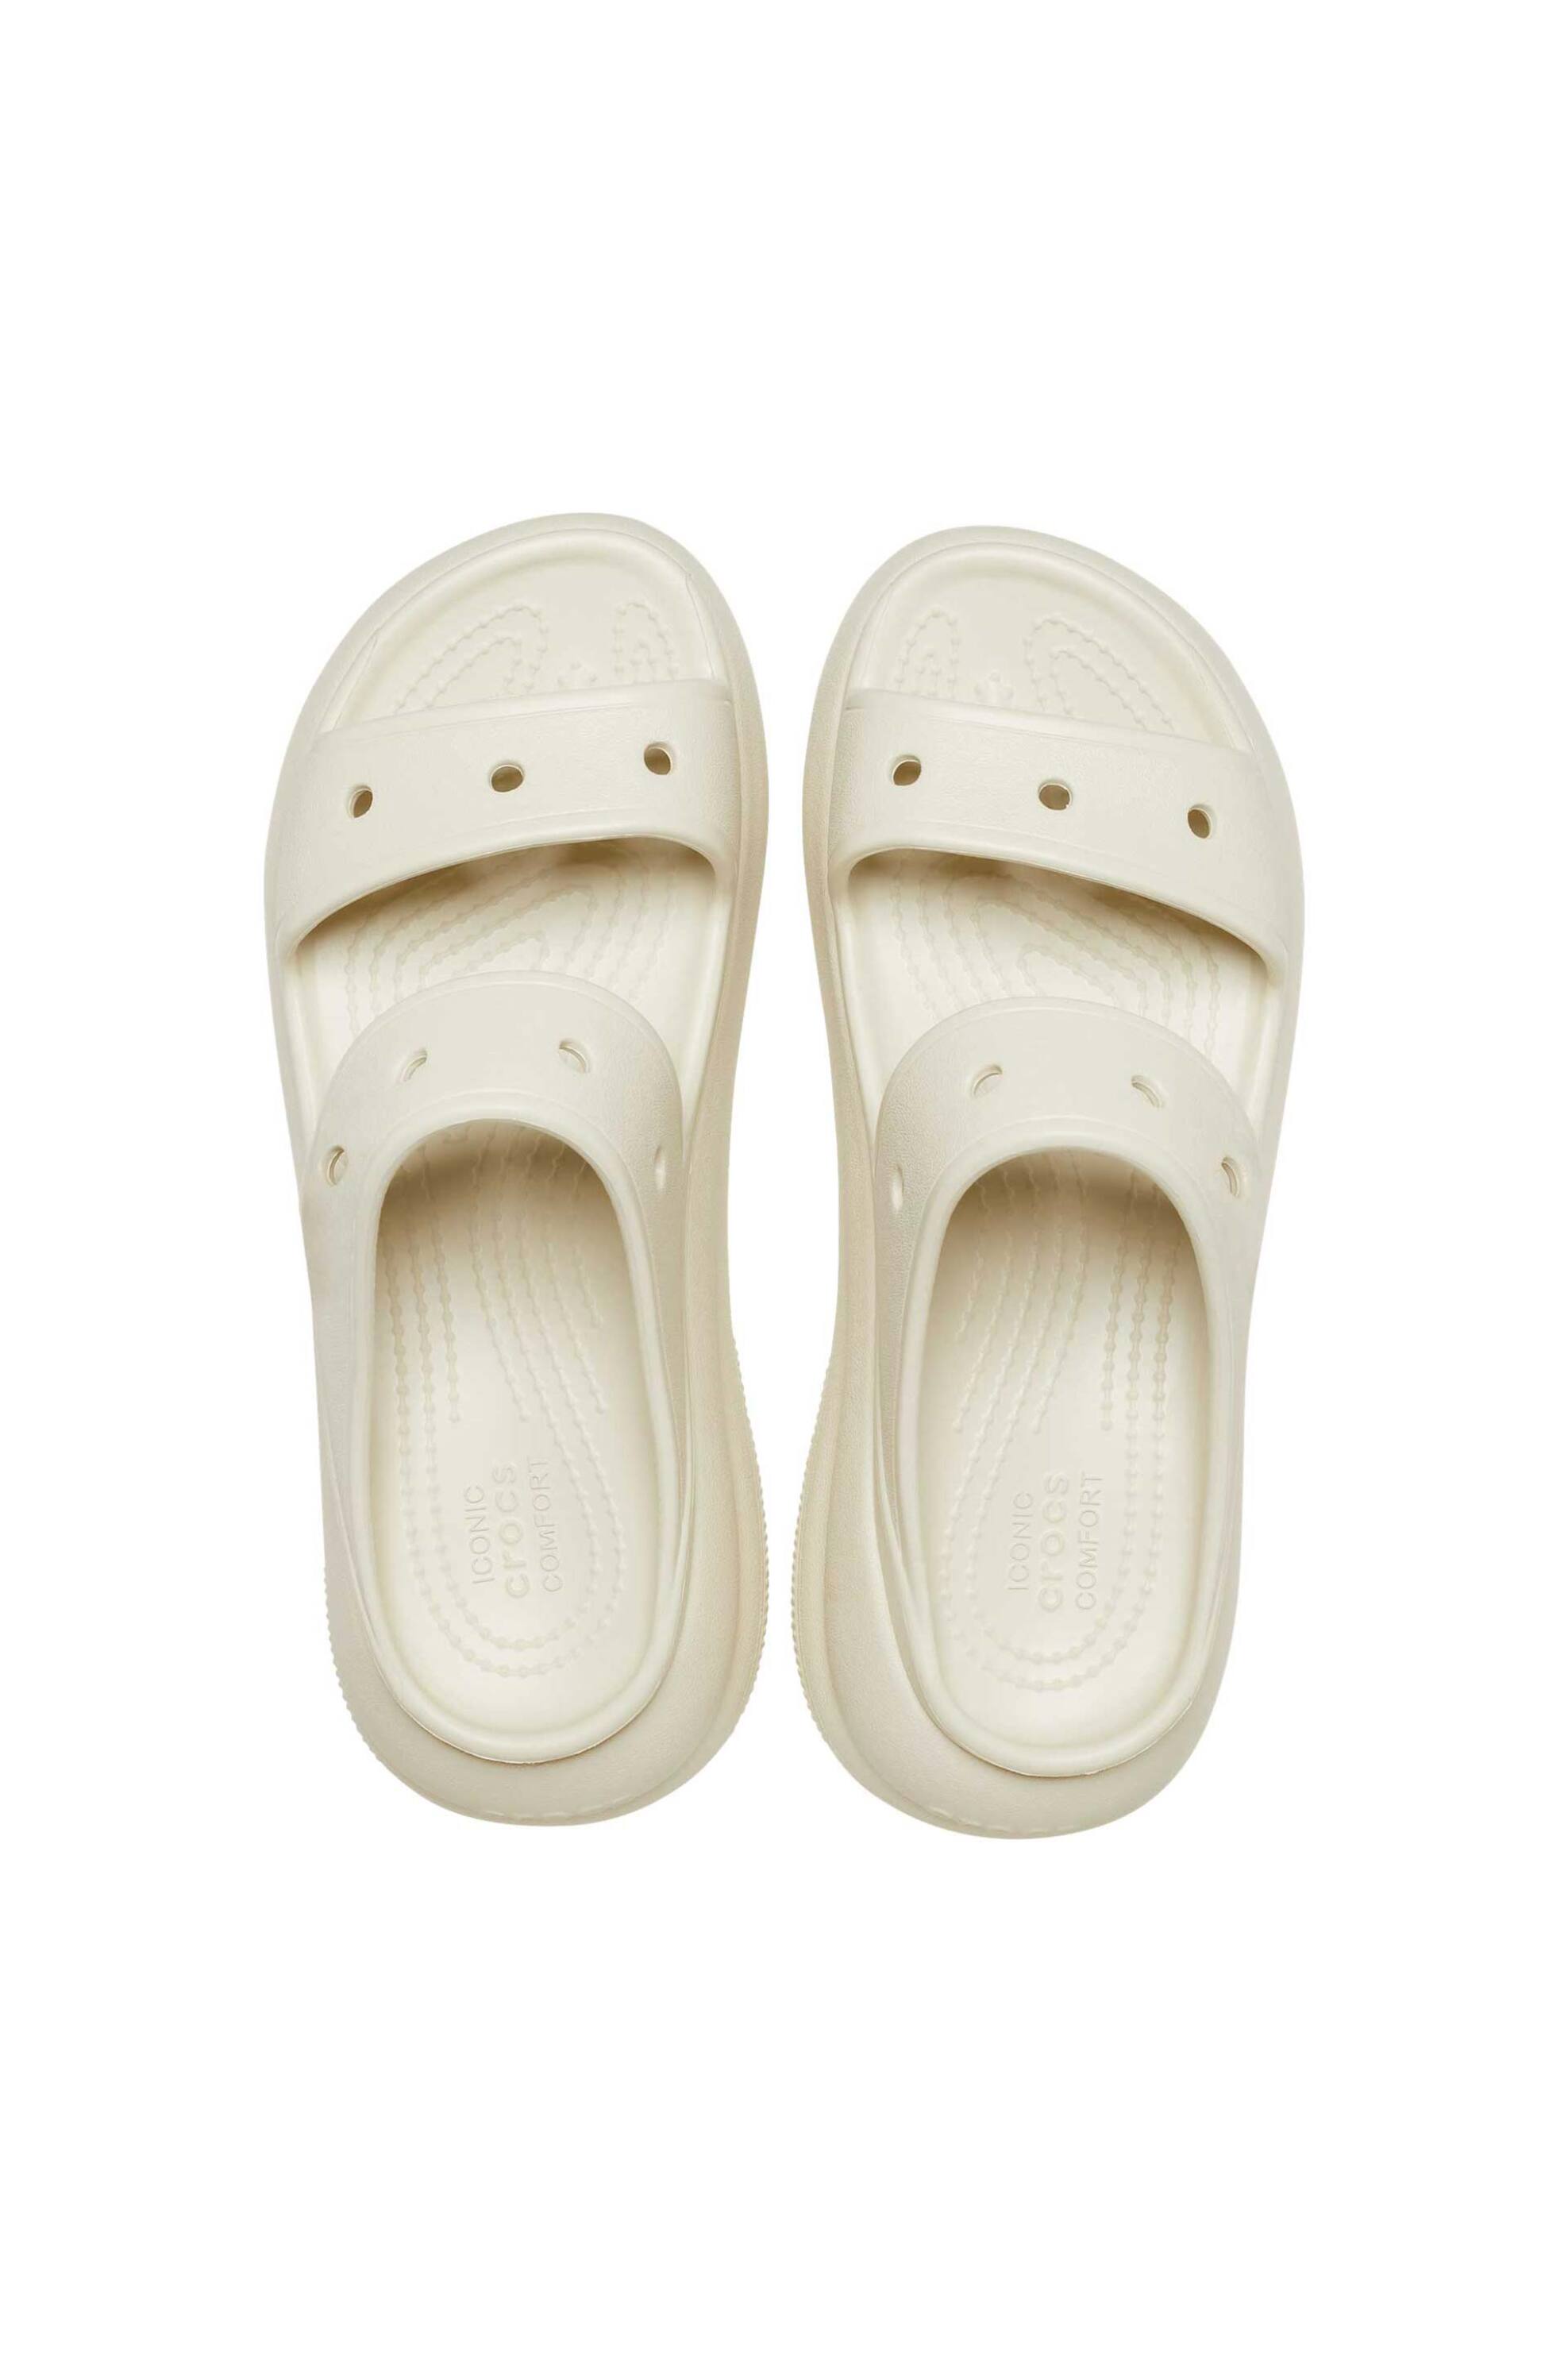 Ανδρική Μόδα > Ανδρικά Παπούτσια > Ανδρικές Παντόφλες & Σαγιονάρες Crocs unisex σαγιονάρες με χοντρή σόλα "Crush Sandal" - E61065 Κρέμ